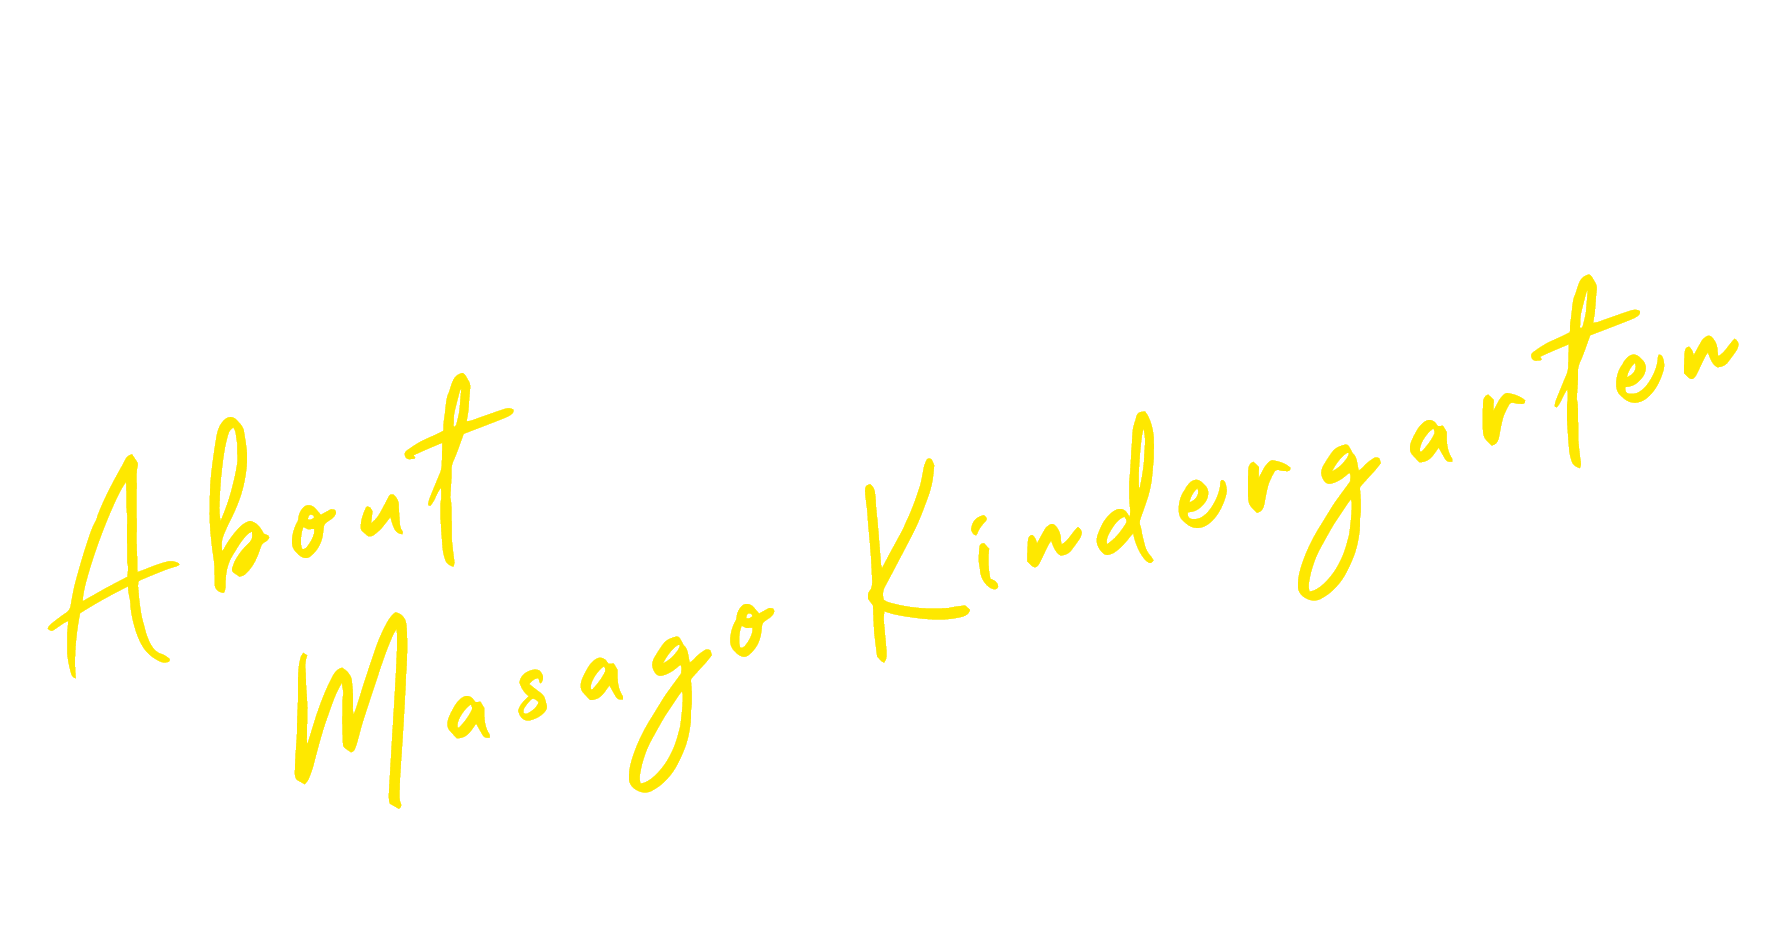 About Masago Kindergarten